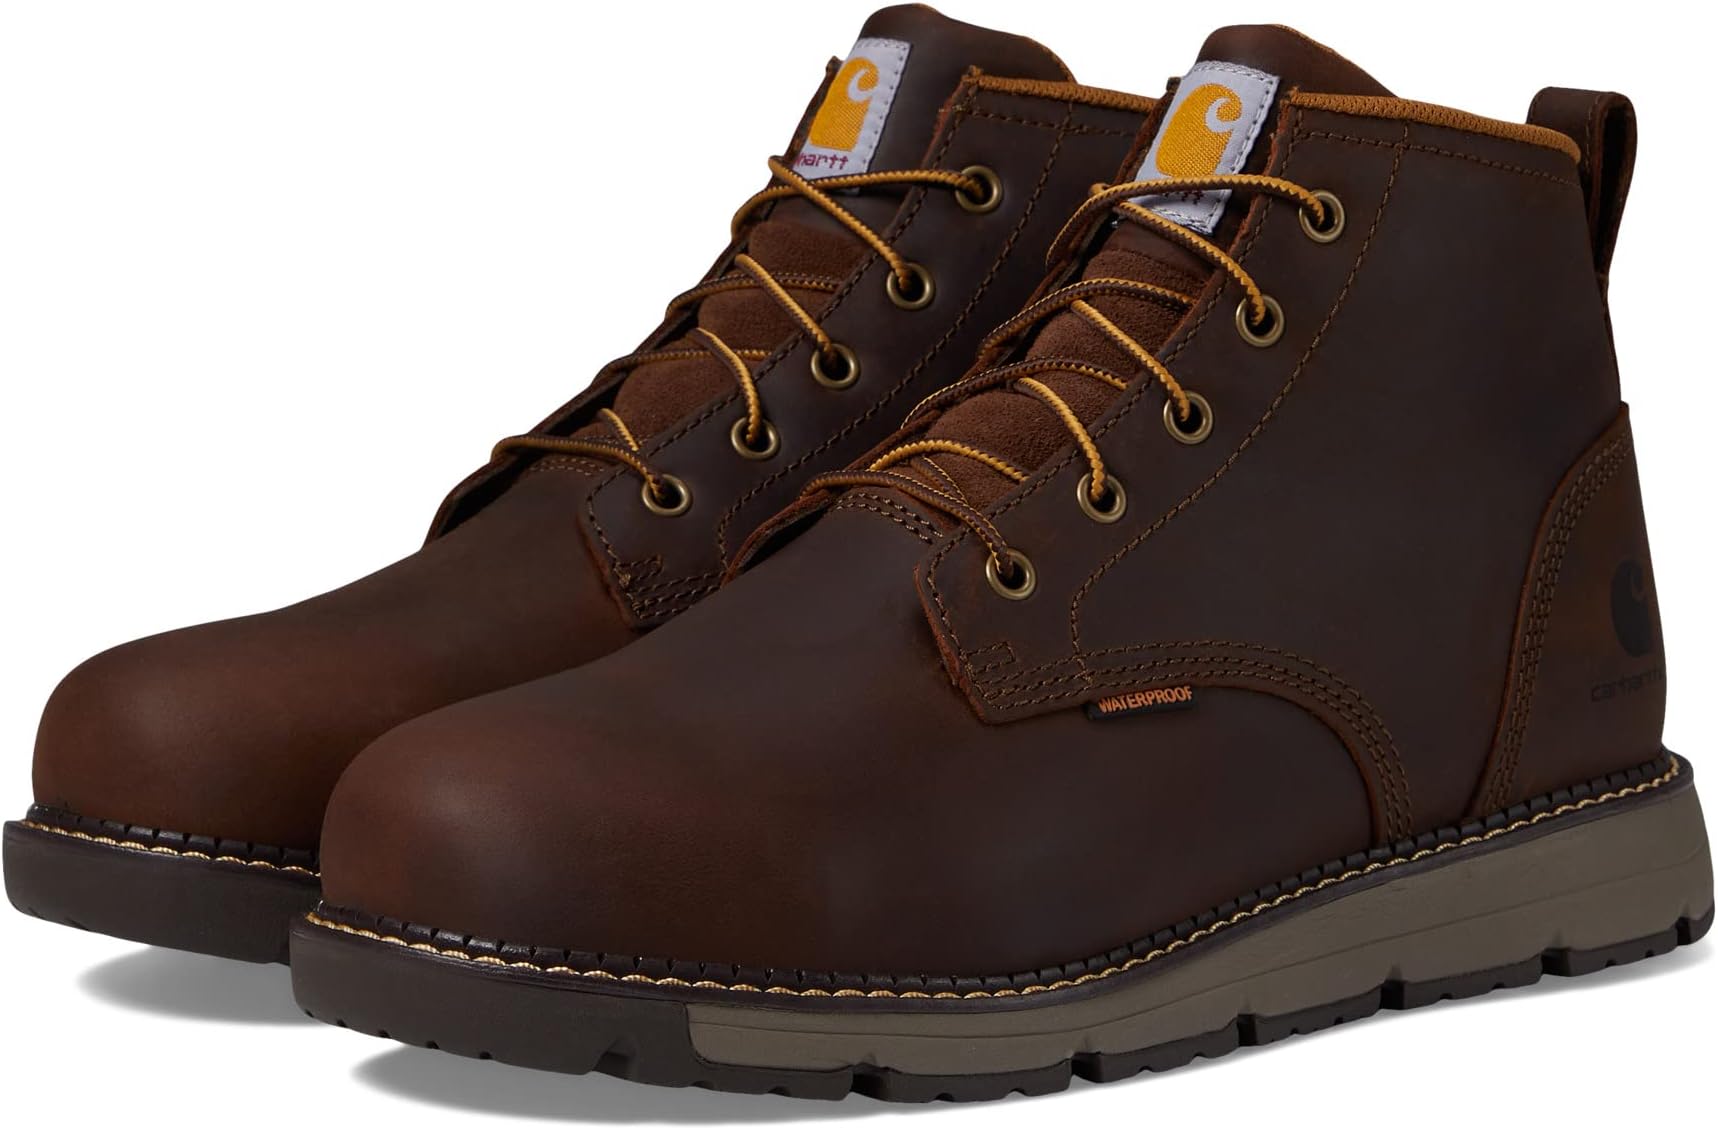 Рабочая обувь водонепроницаемая со стальным носком Millbrook Waterproof 5 Steel Toe Wedge Work Boot Carhartt, цвет Brown Oil Tanned